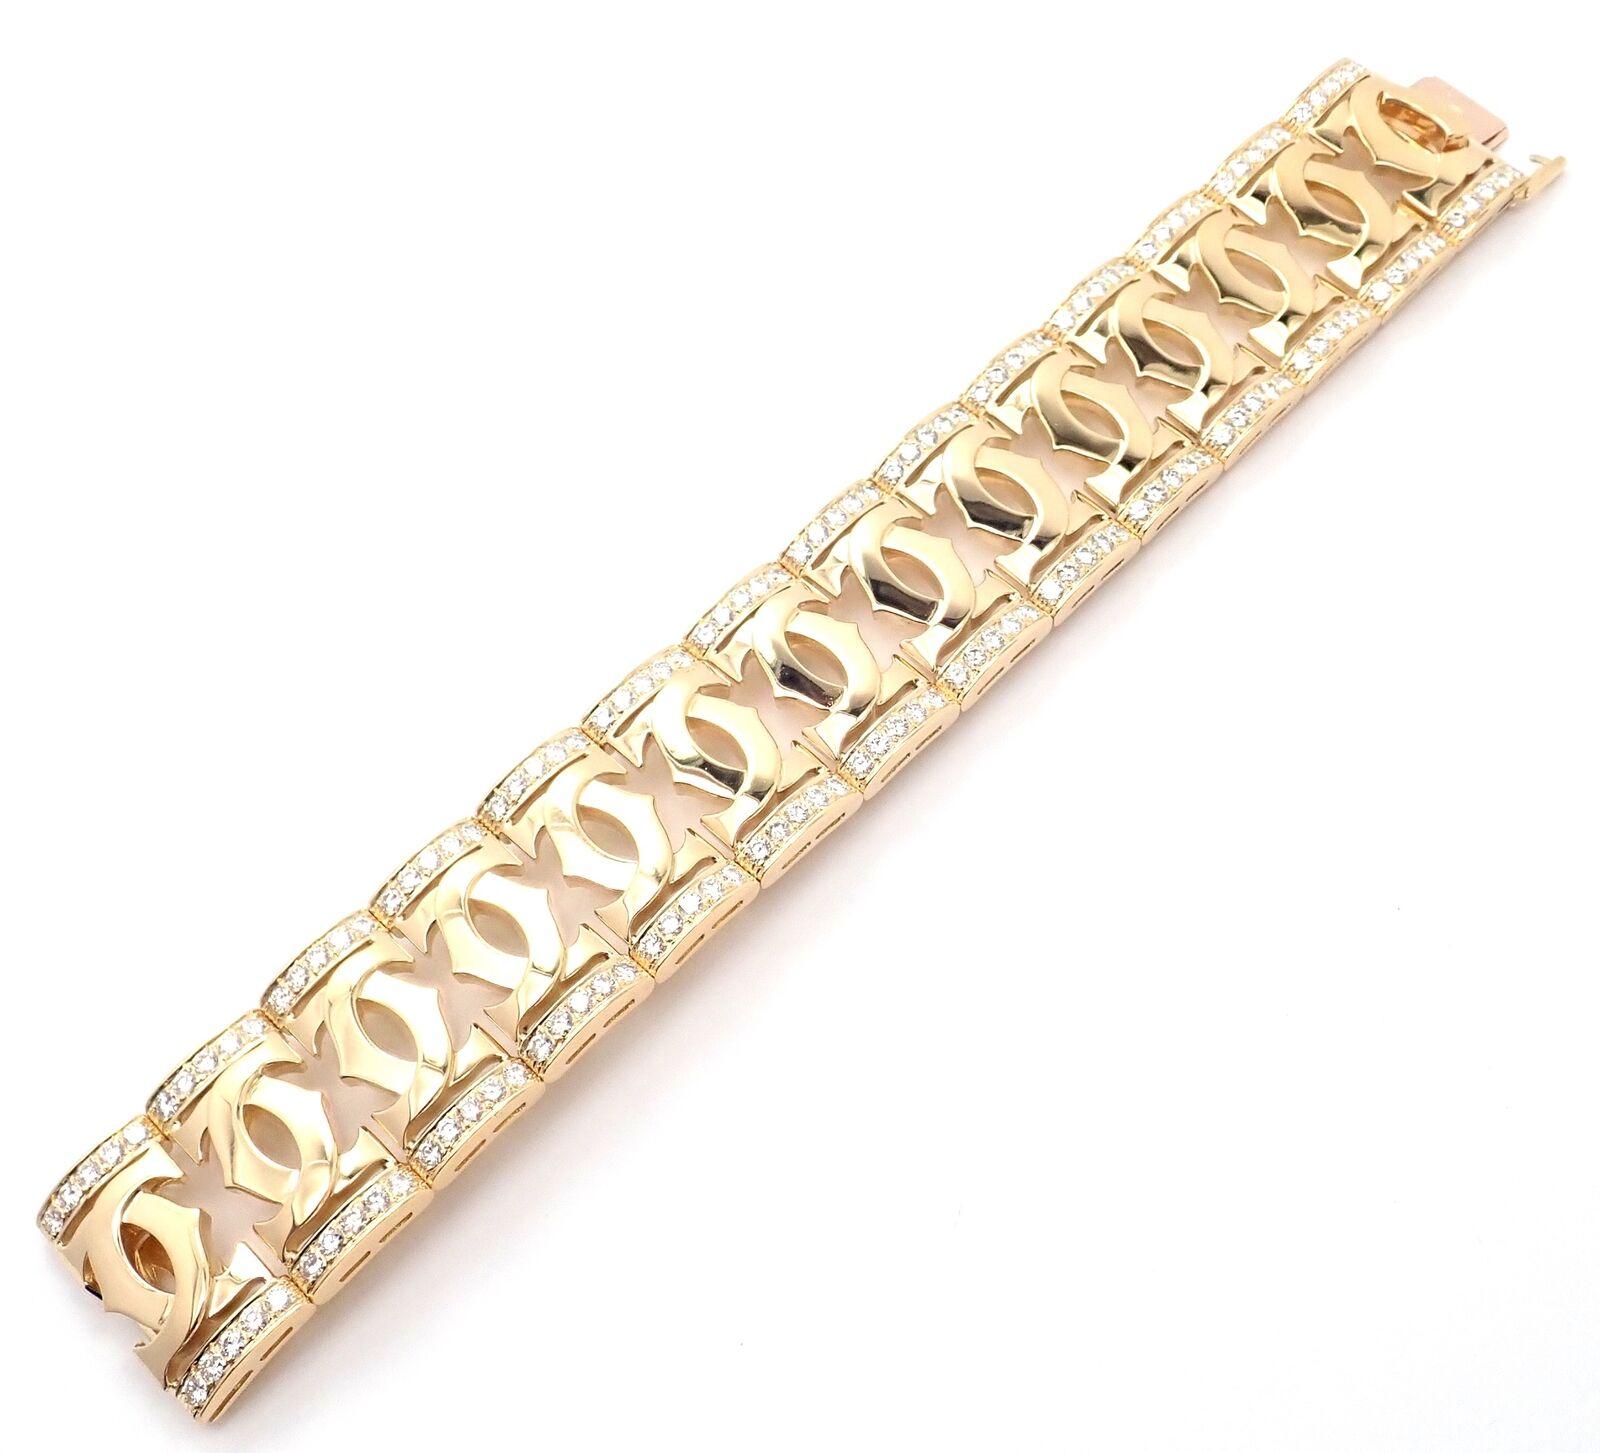 Brilliant Cut Cartier Diamond Double C Wide Yellow Gold Link Bracelet